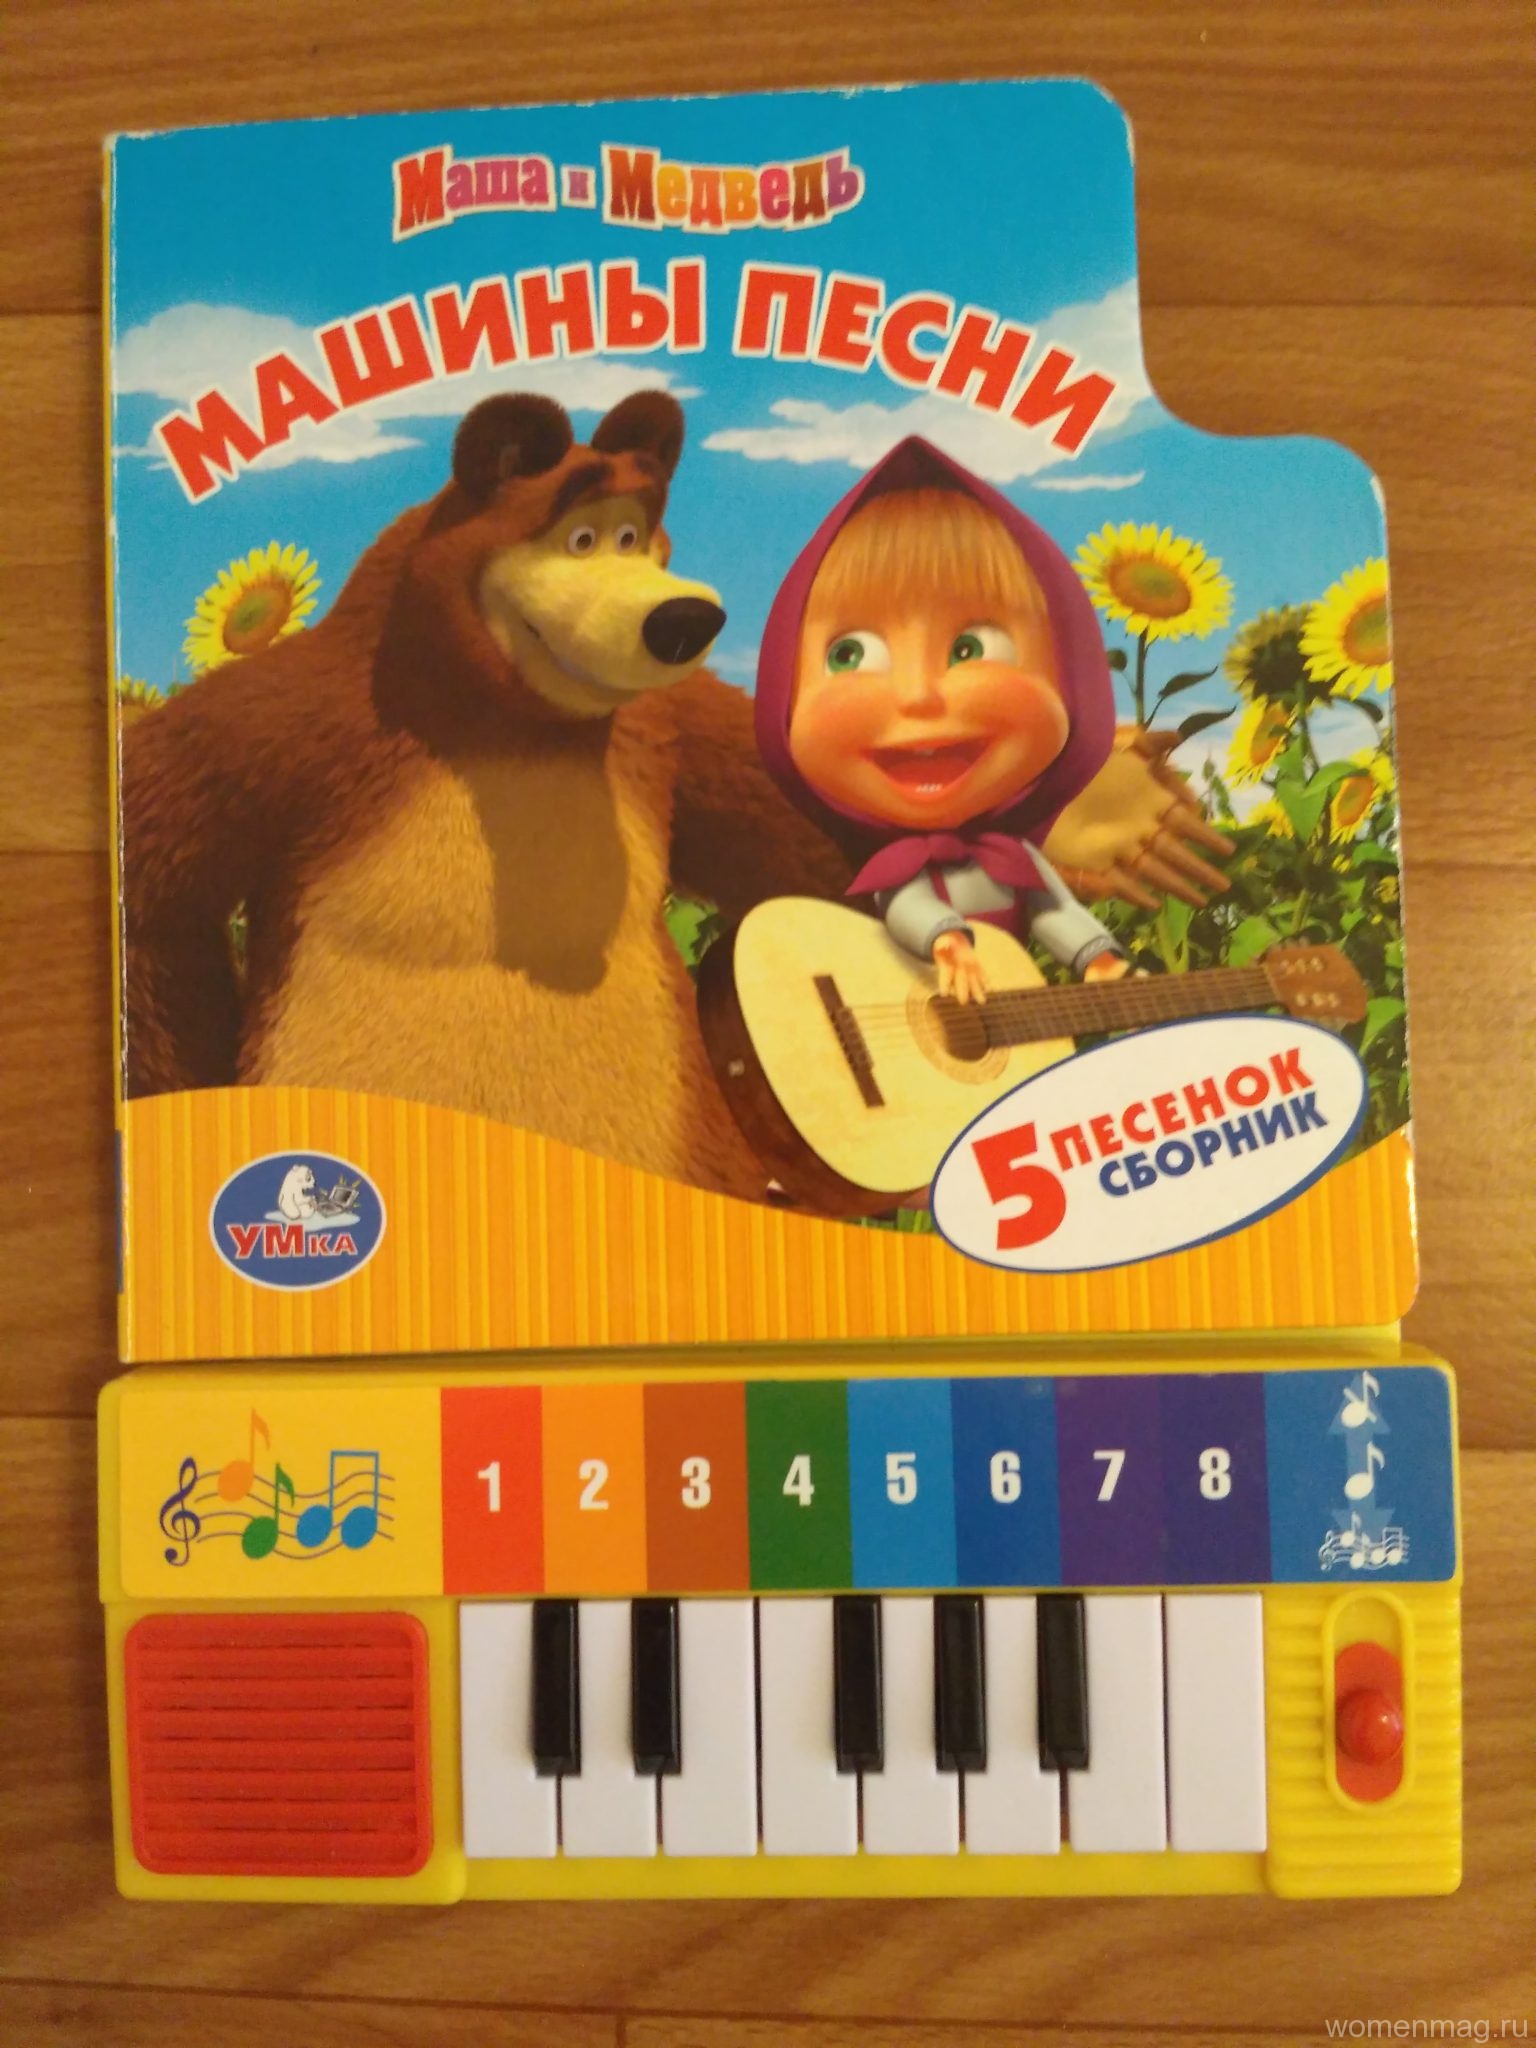 Книга-пианино «Маша и медведь. Машины песни». Отзыв